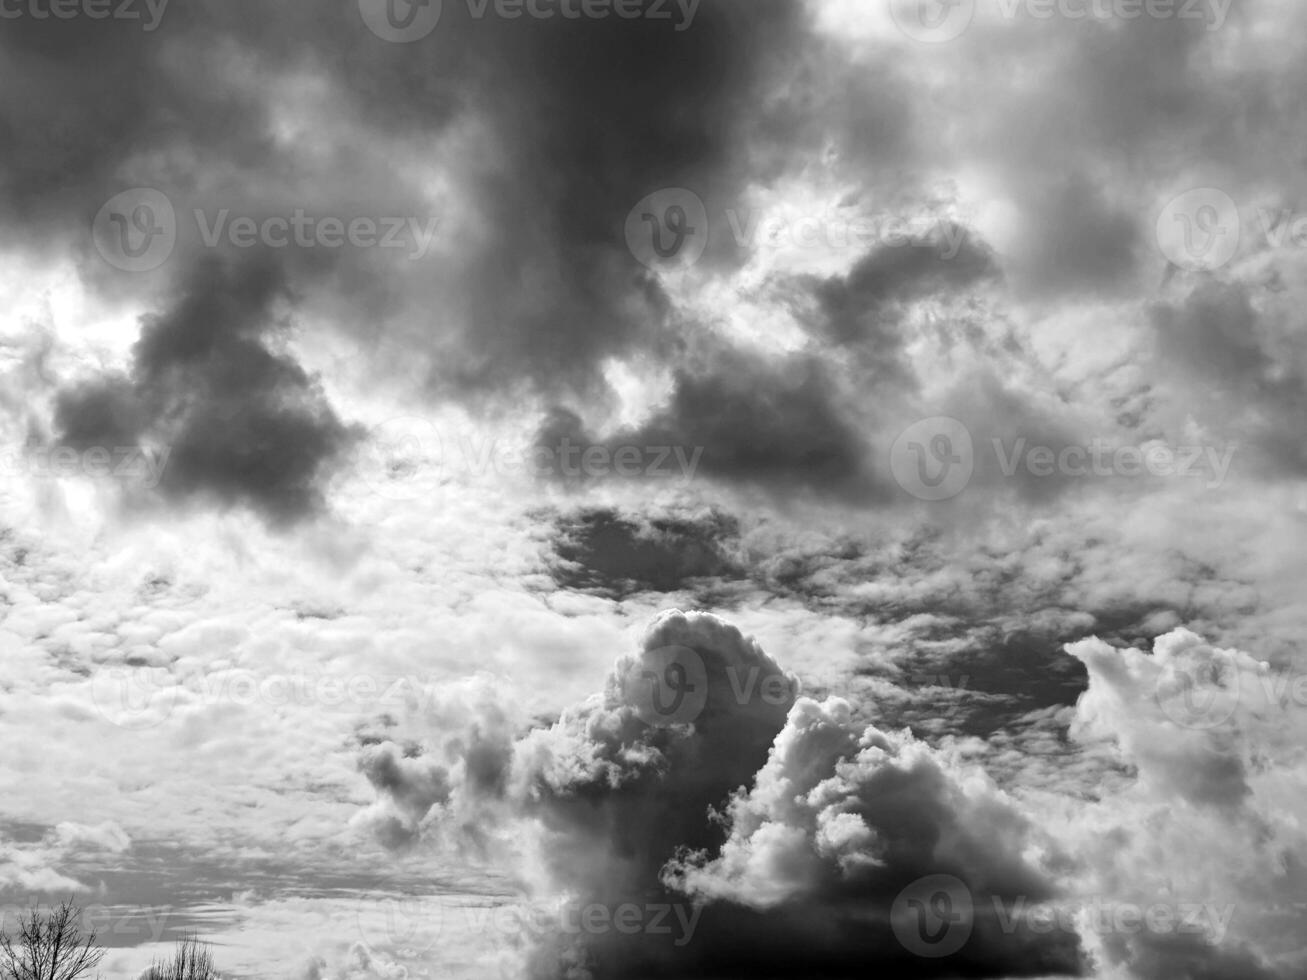 negro y blanco nubes en el cielo antecedentes foto